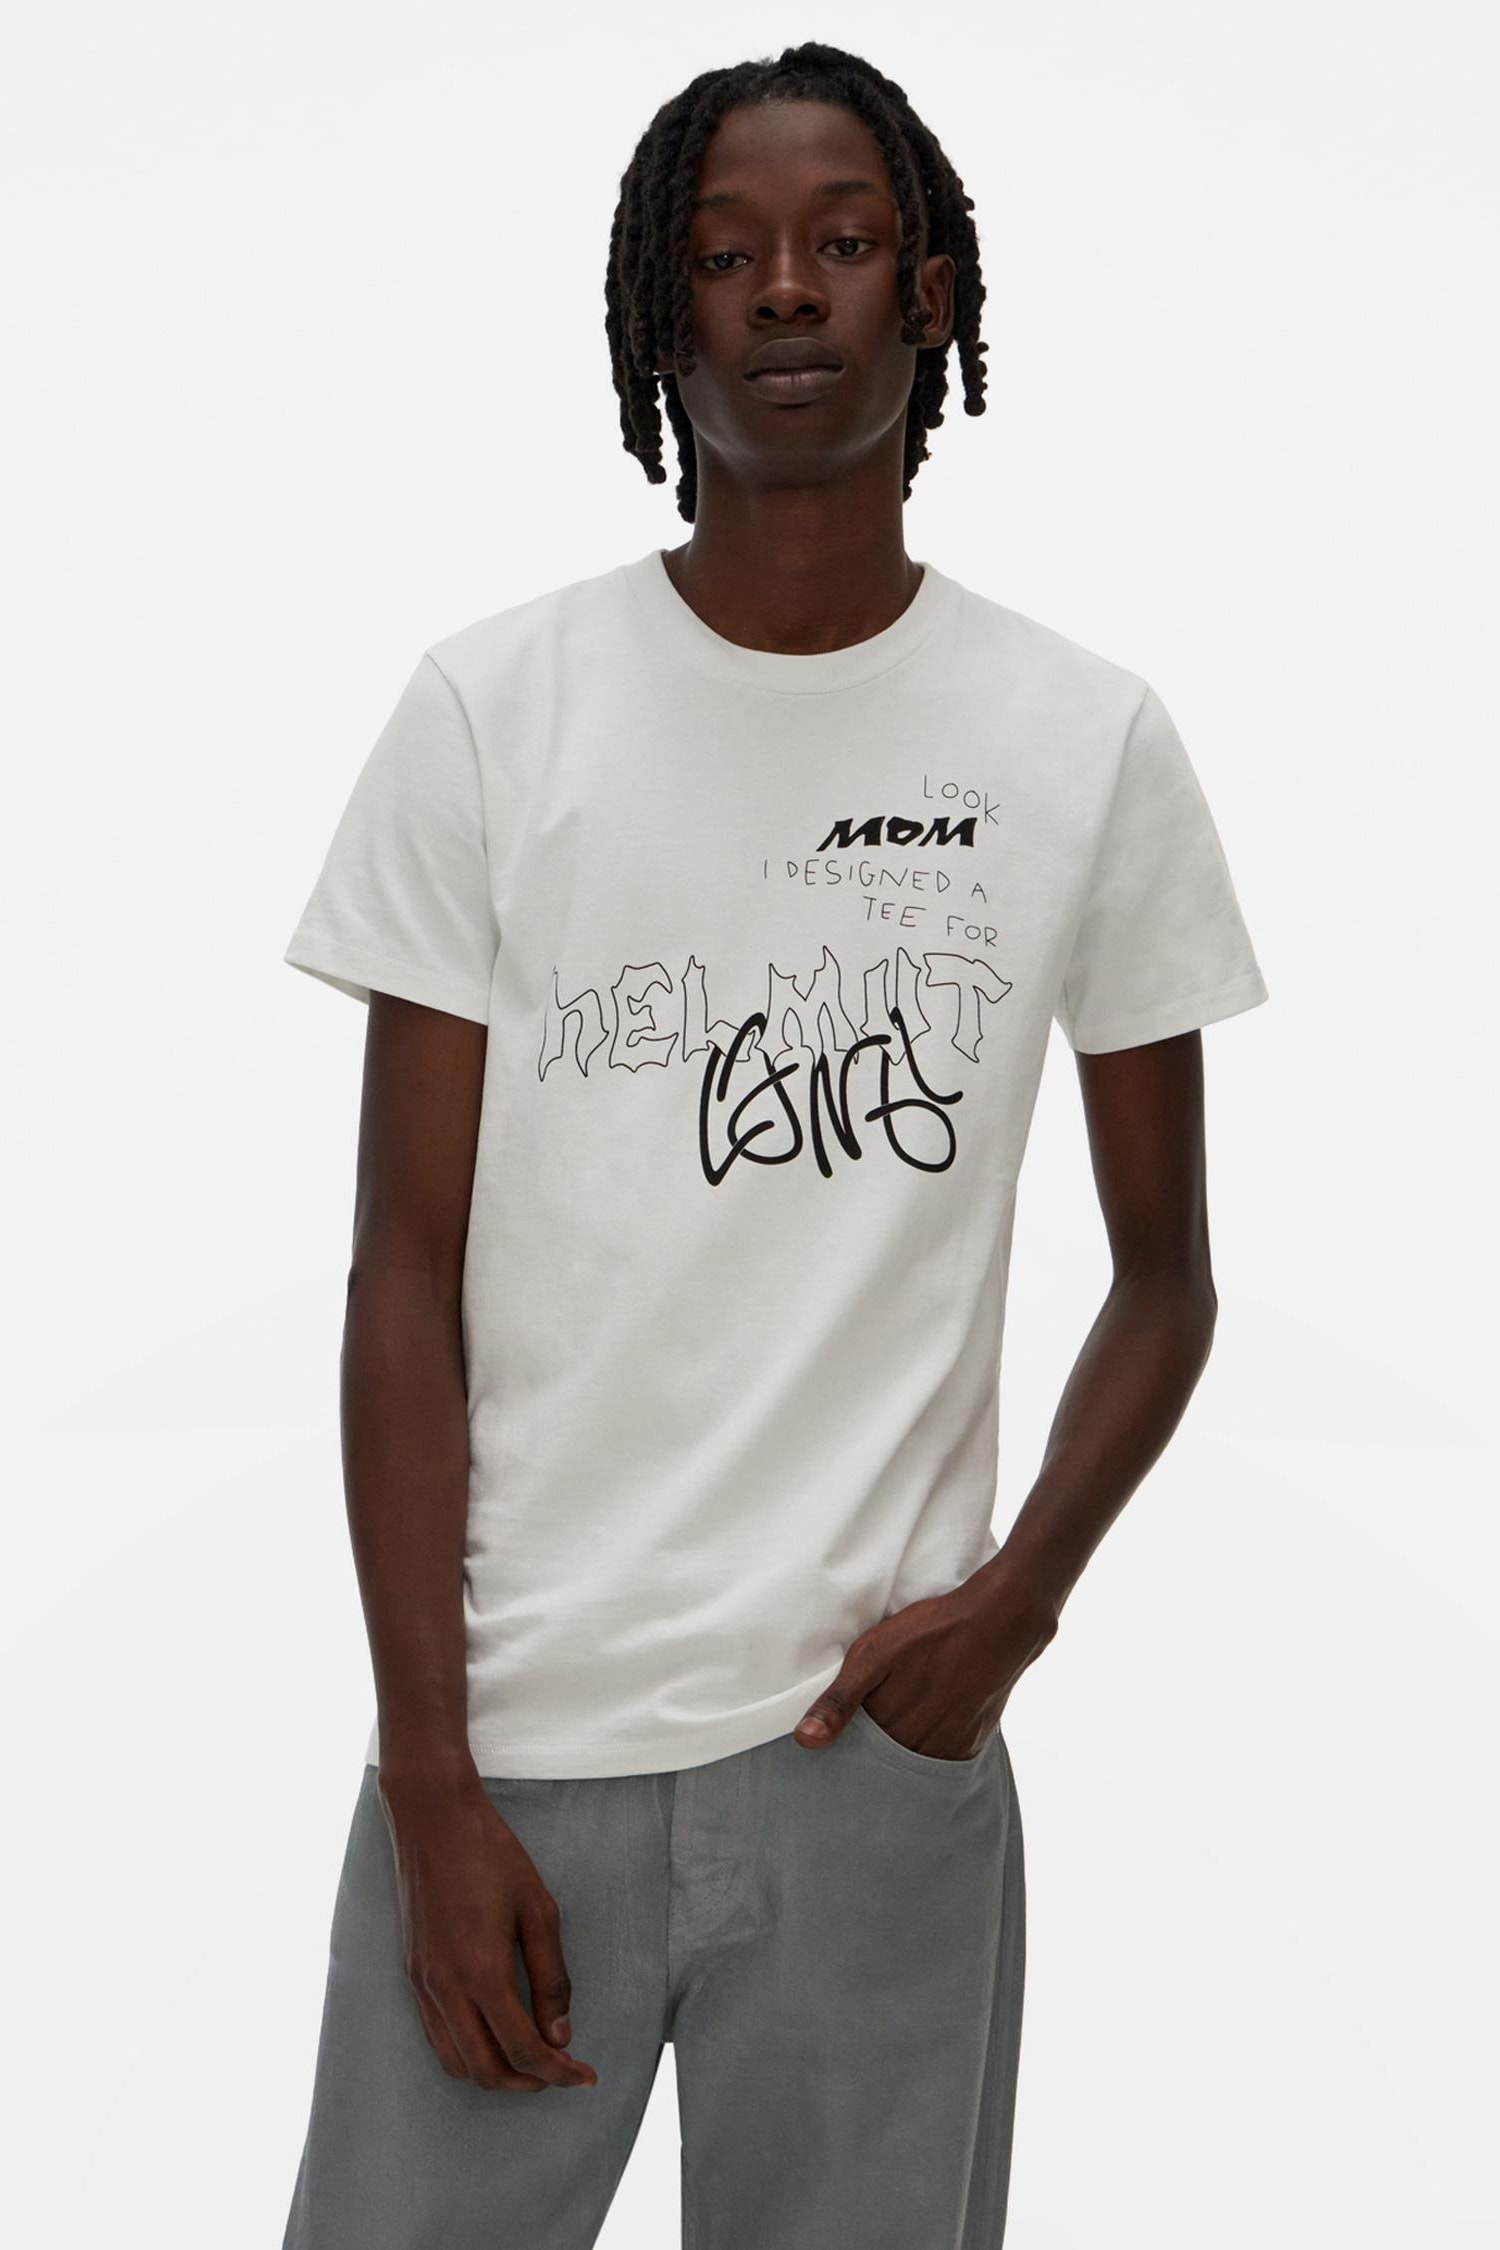 Helmut Lang 2020 T-shirt Contest Winning Designs | Hypebeast